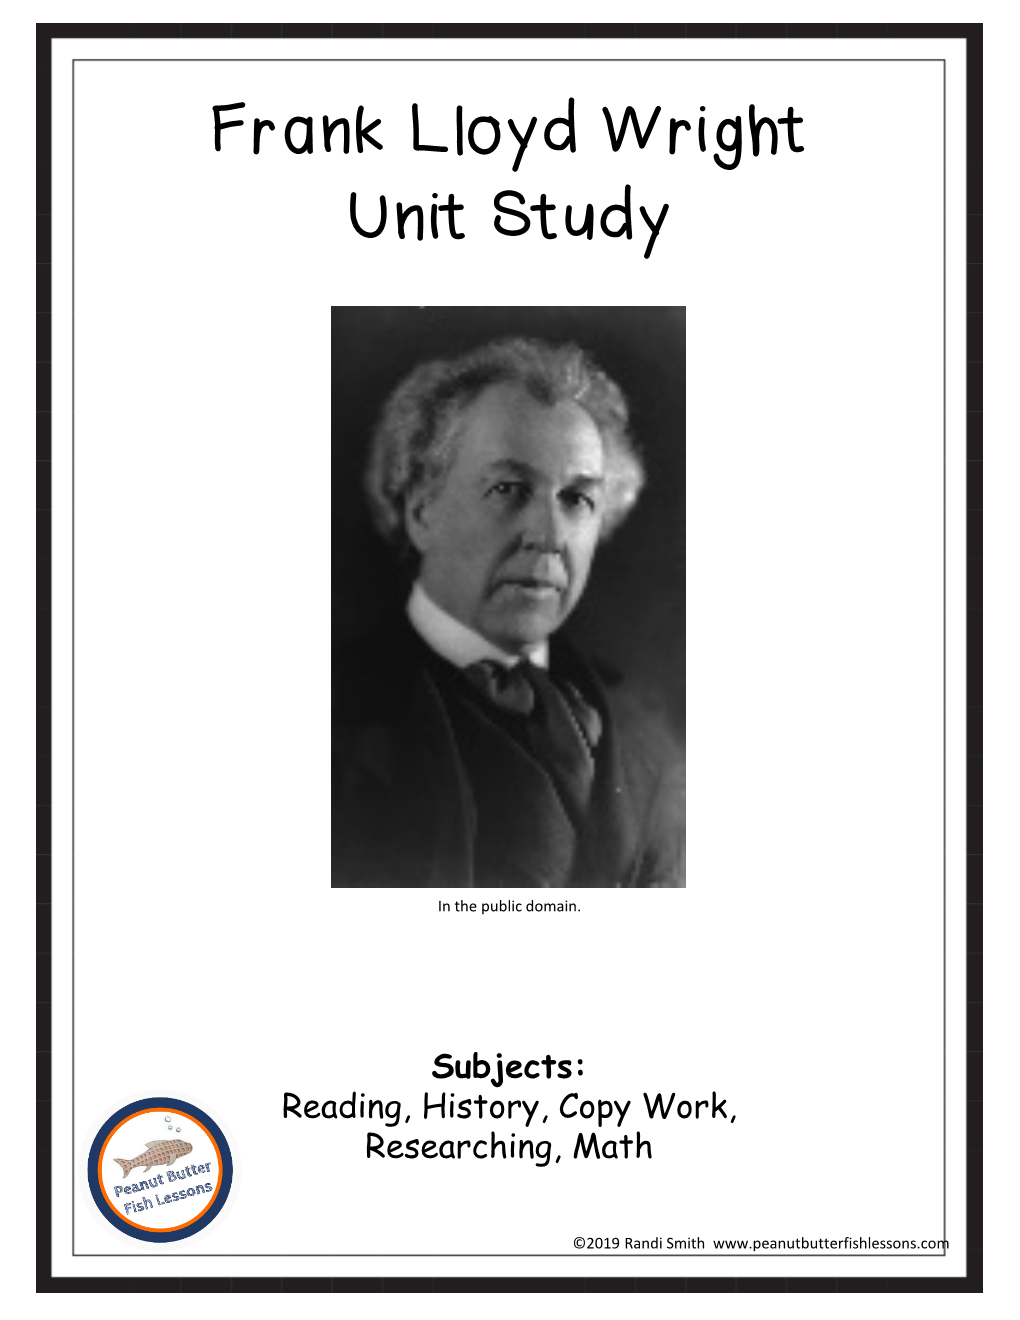 Frank Lloyd Wright Unit Study